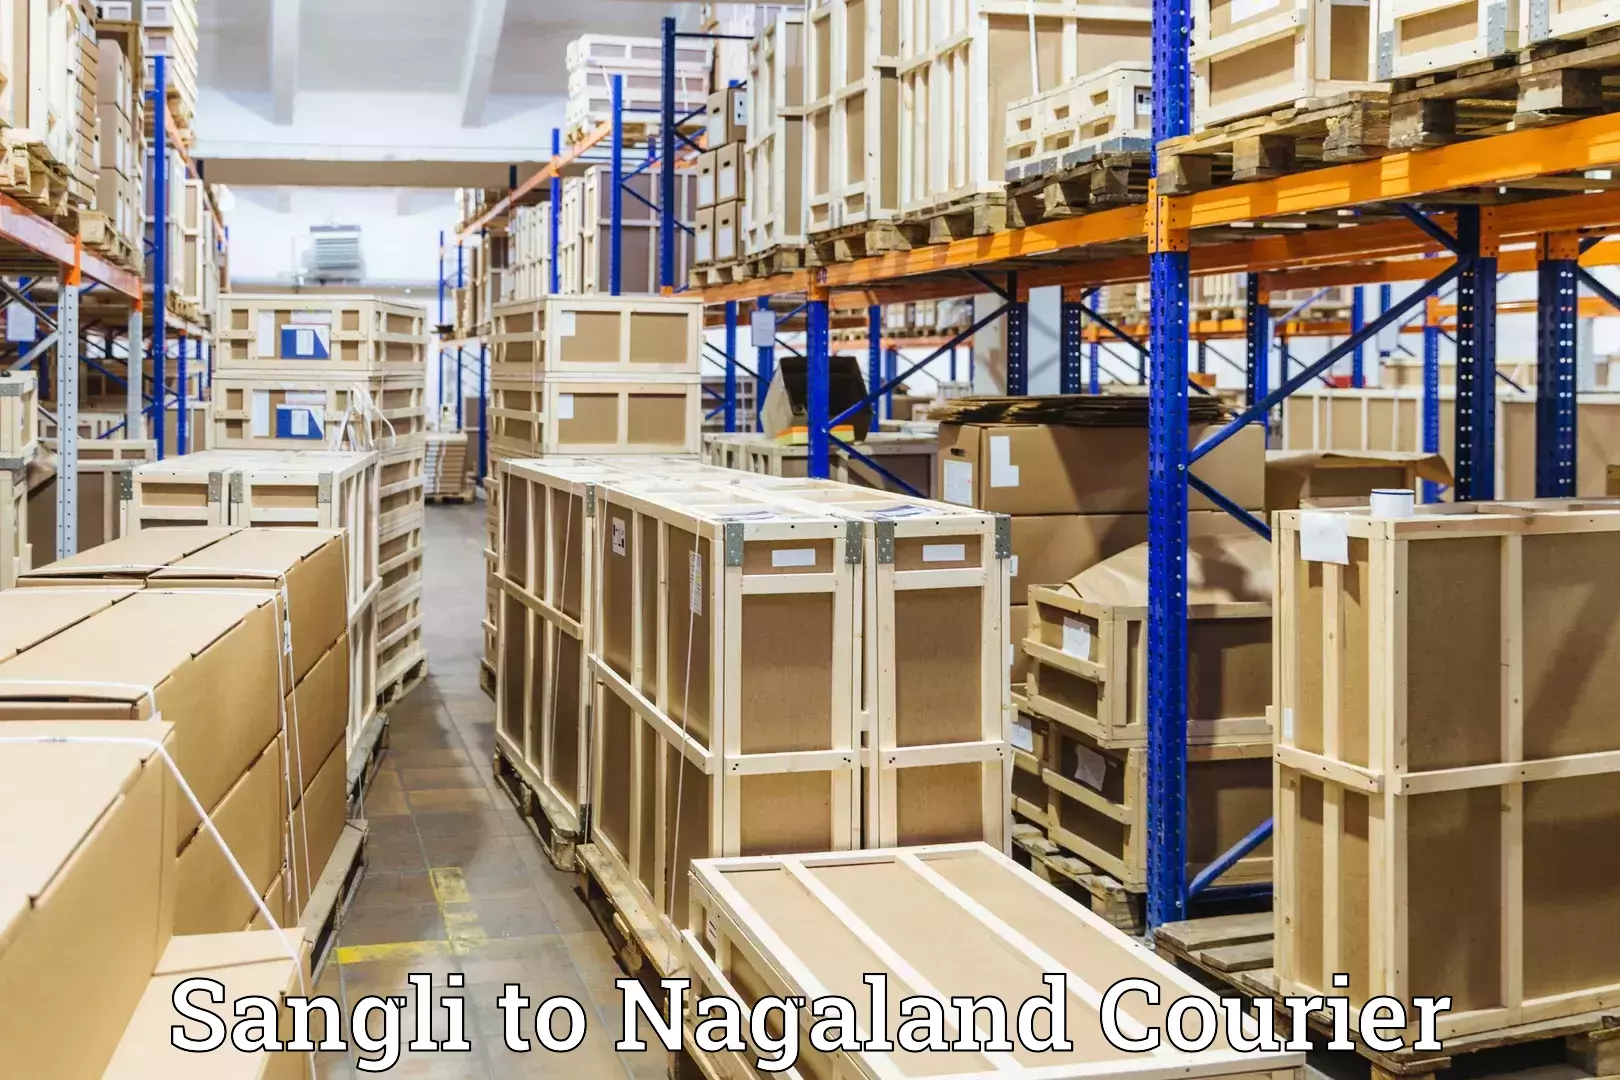 Luggage delivery news Sangli to Nagaland